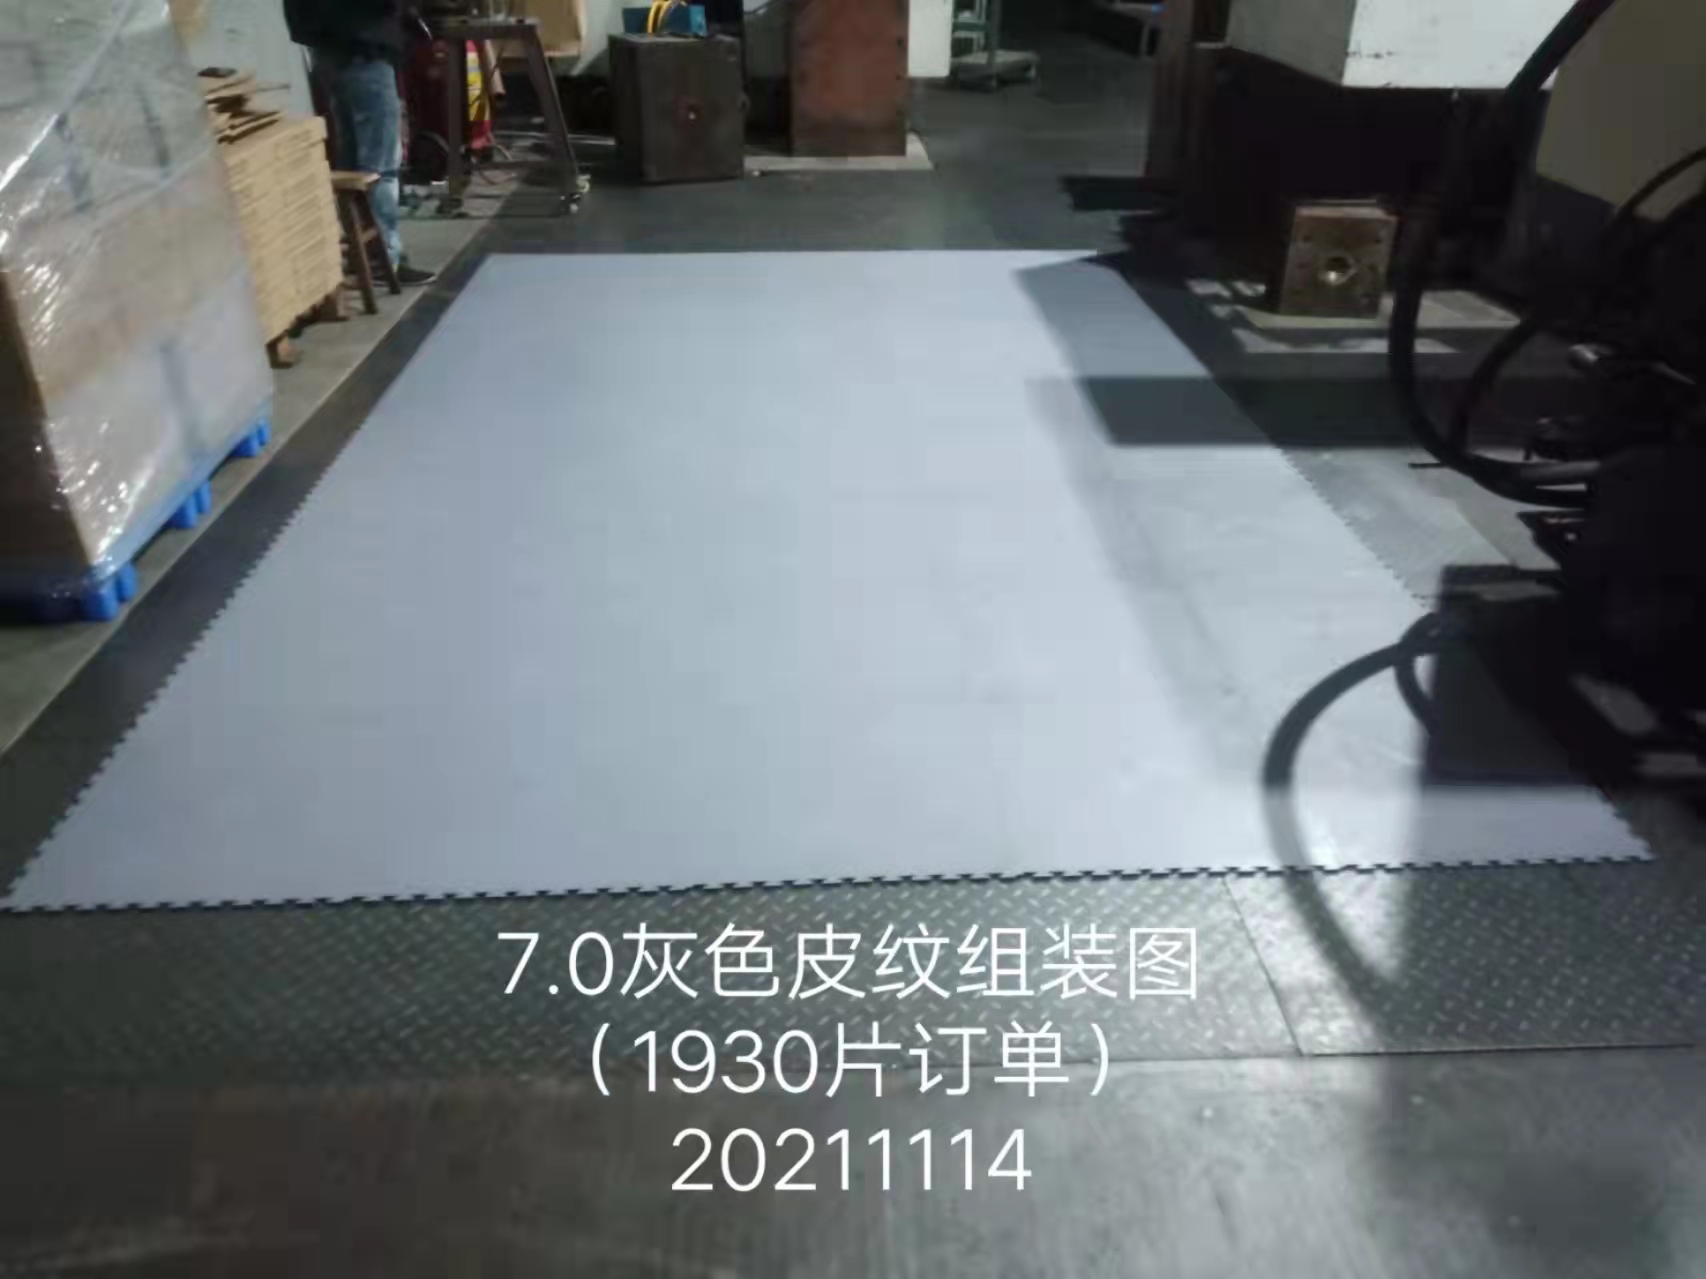 供应7.0灰色皮纹地板 工业地板厂家  工业厂房地板批发